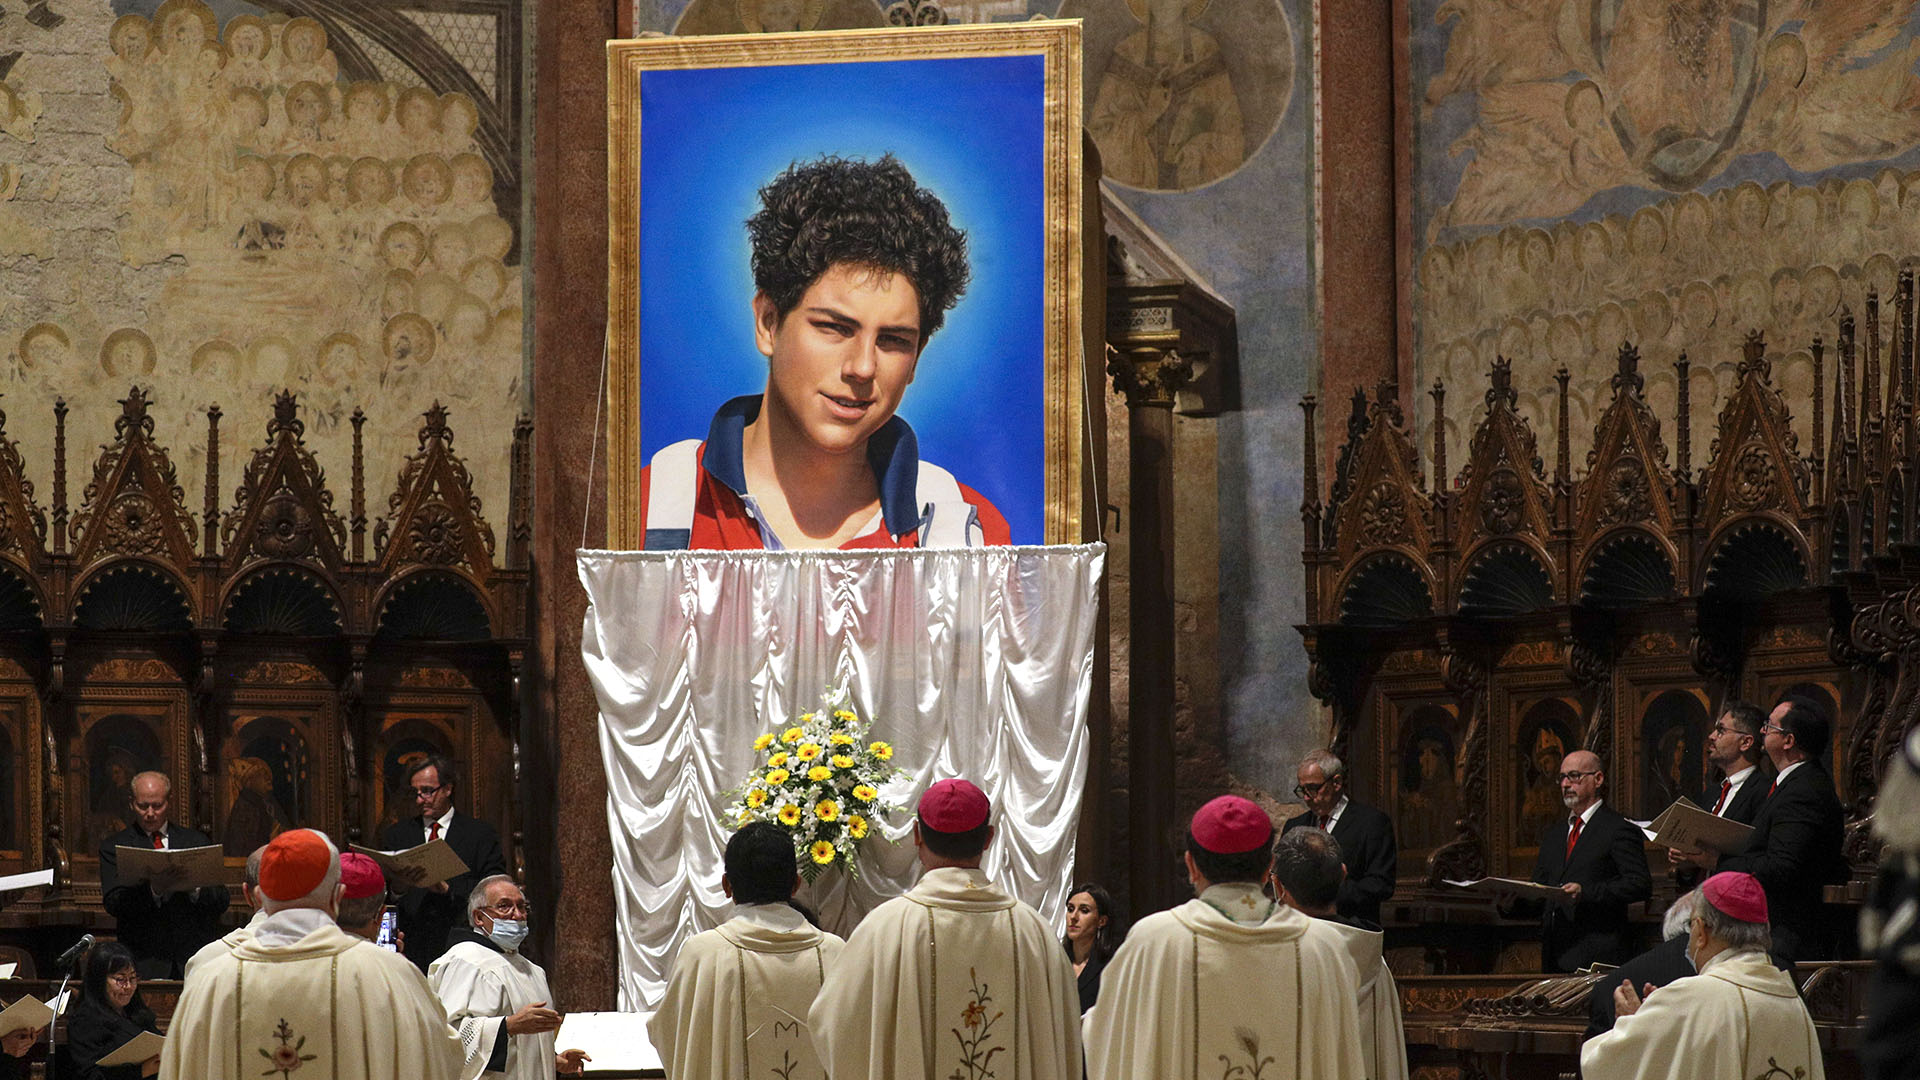 La imagen de Carlo Acutis que fue descubierta el día de su beatificación en Asís (AP Photo/Gregorio Borgia)